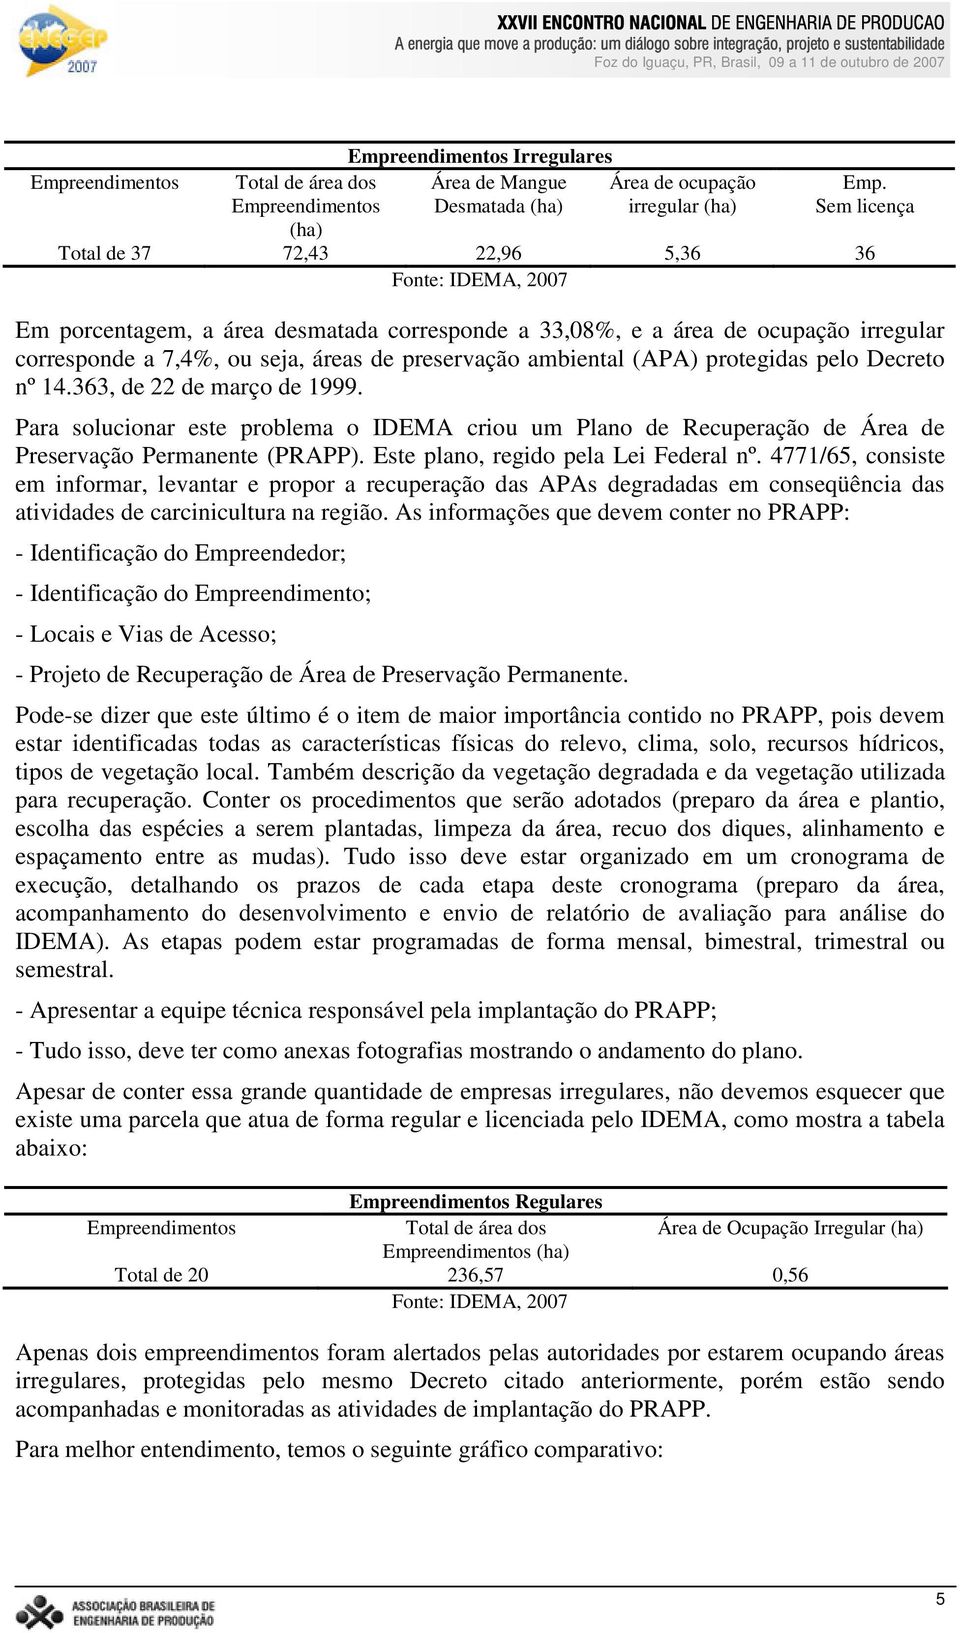 ambiental (APA) protegidas pelo Decreto nº 14.363, de 22 de março de 1999. Para solucionar este problema o IDEMA criou um Plano de Recuperação de Área de Preservação Permanente (PRAPP).